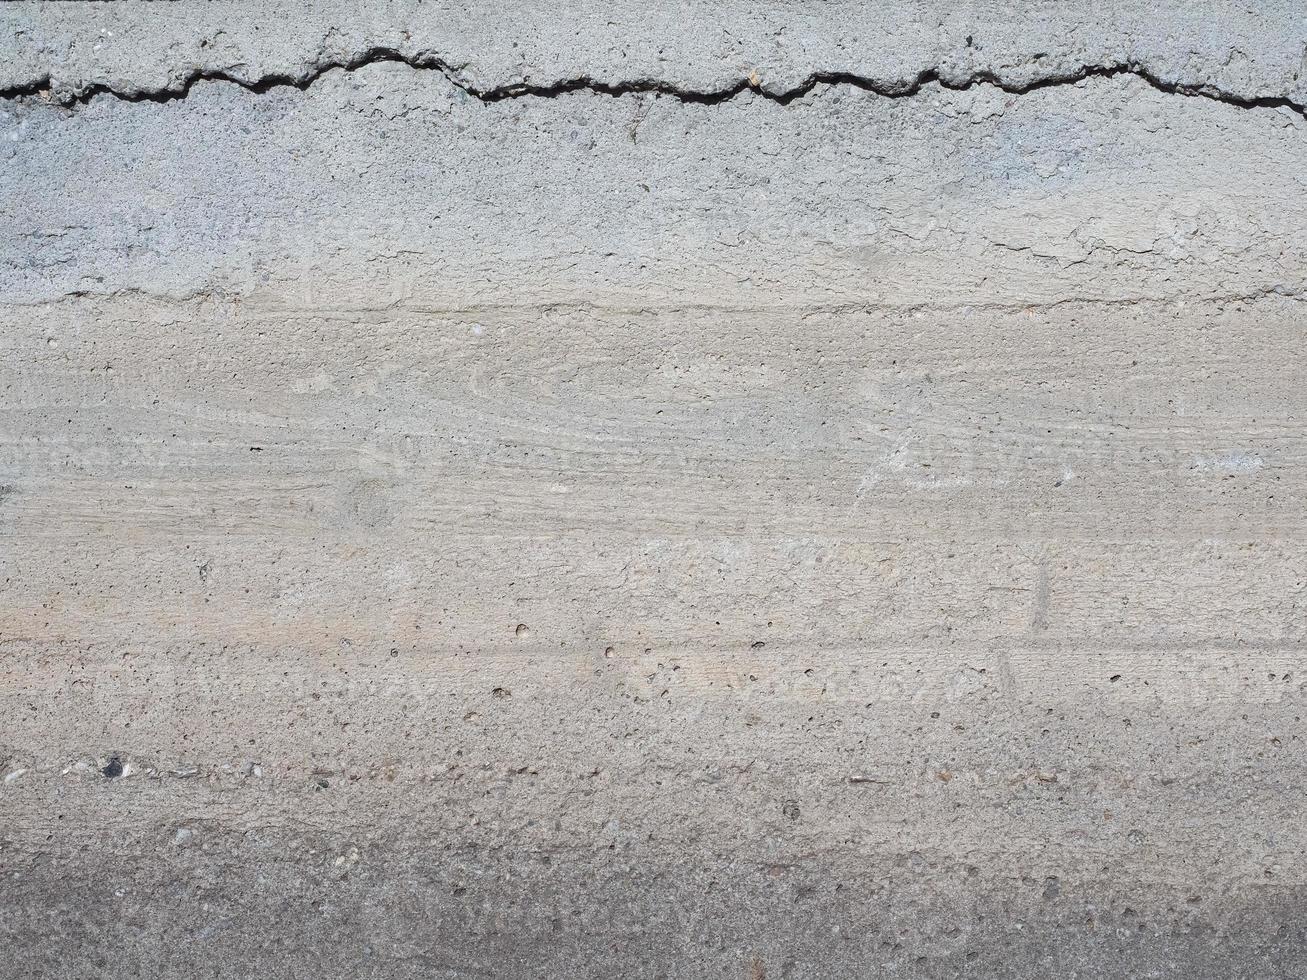 grauer Beton Textur Hintergrund foto